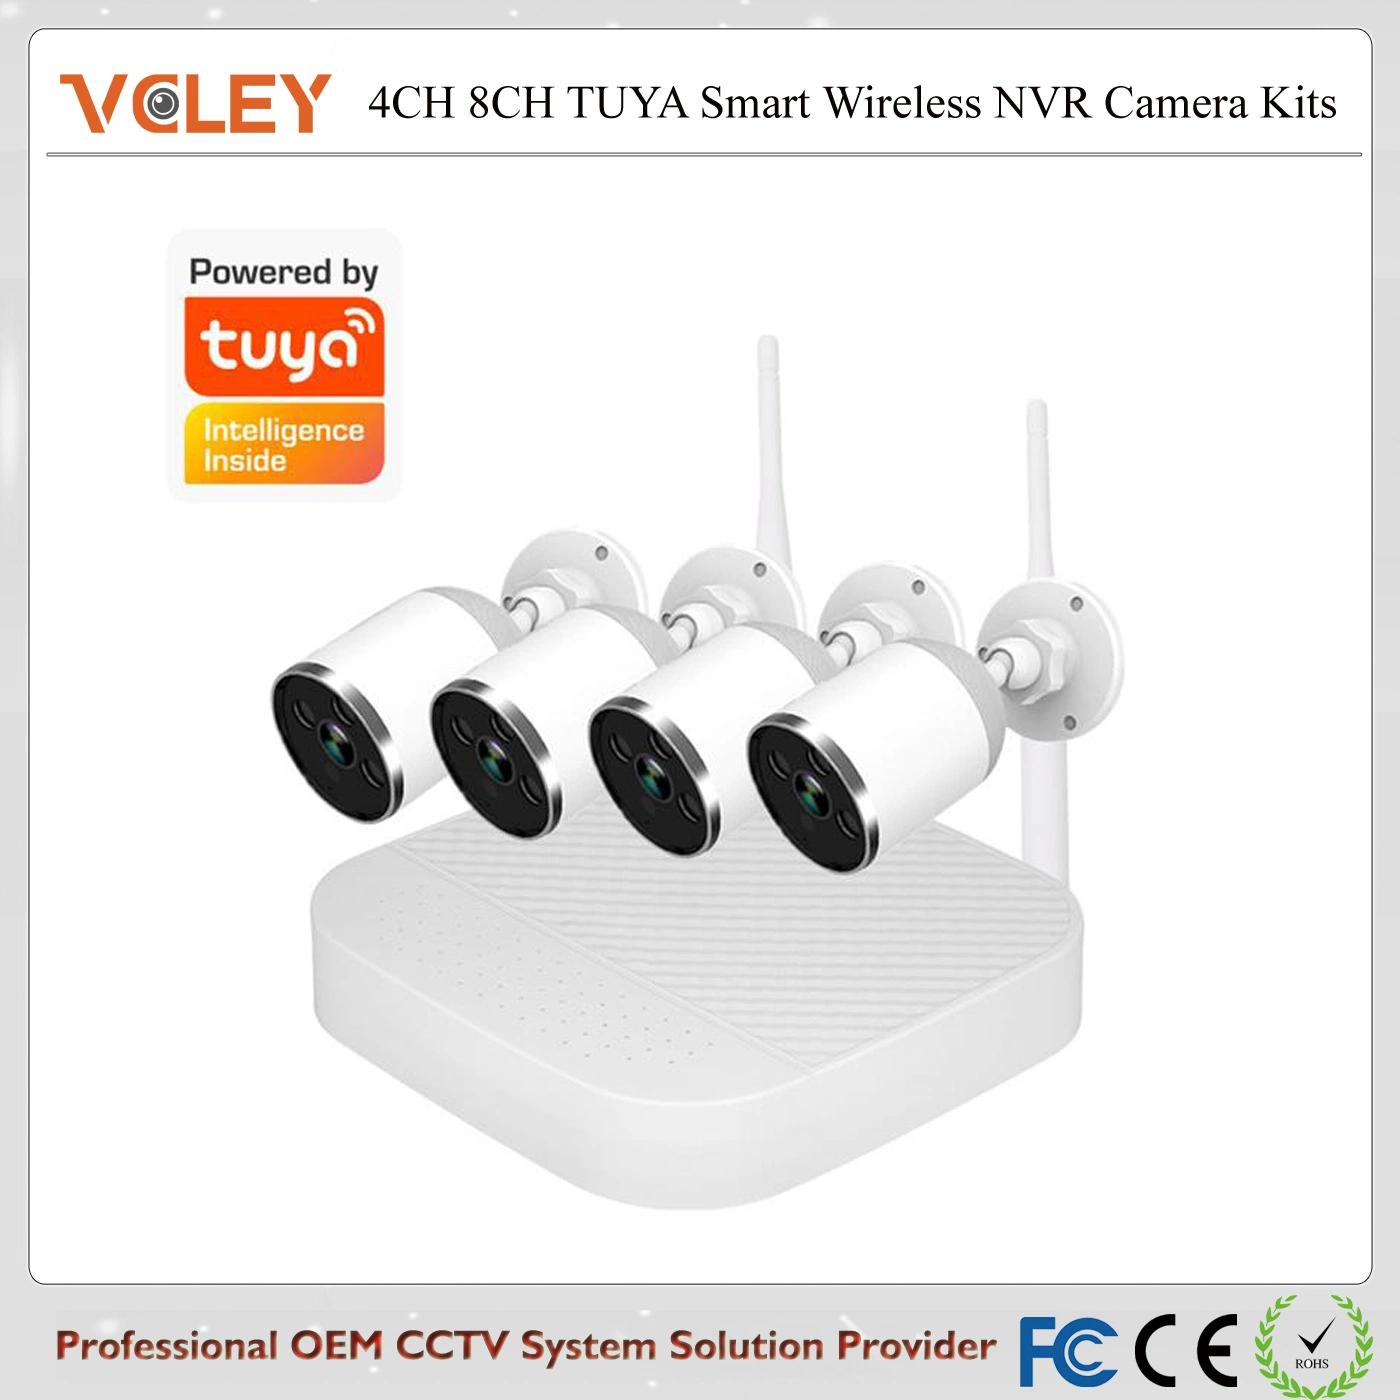 نظام كاميرا الأمان المنزلية من Tuya دقة 4CH 8CH 2 ميجابكسل لاسلكية مجموعة WIF NVR المقاومة للماء بدقة 1080p لمراقبة الفيديو من الشراء إلى الدفع عبر شبكة CCTV الخارجية النظام